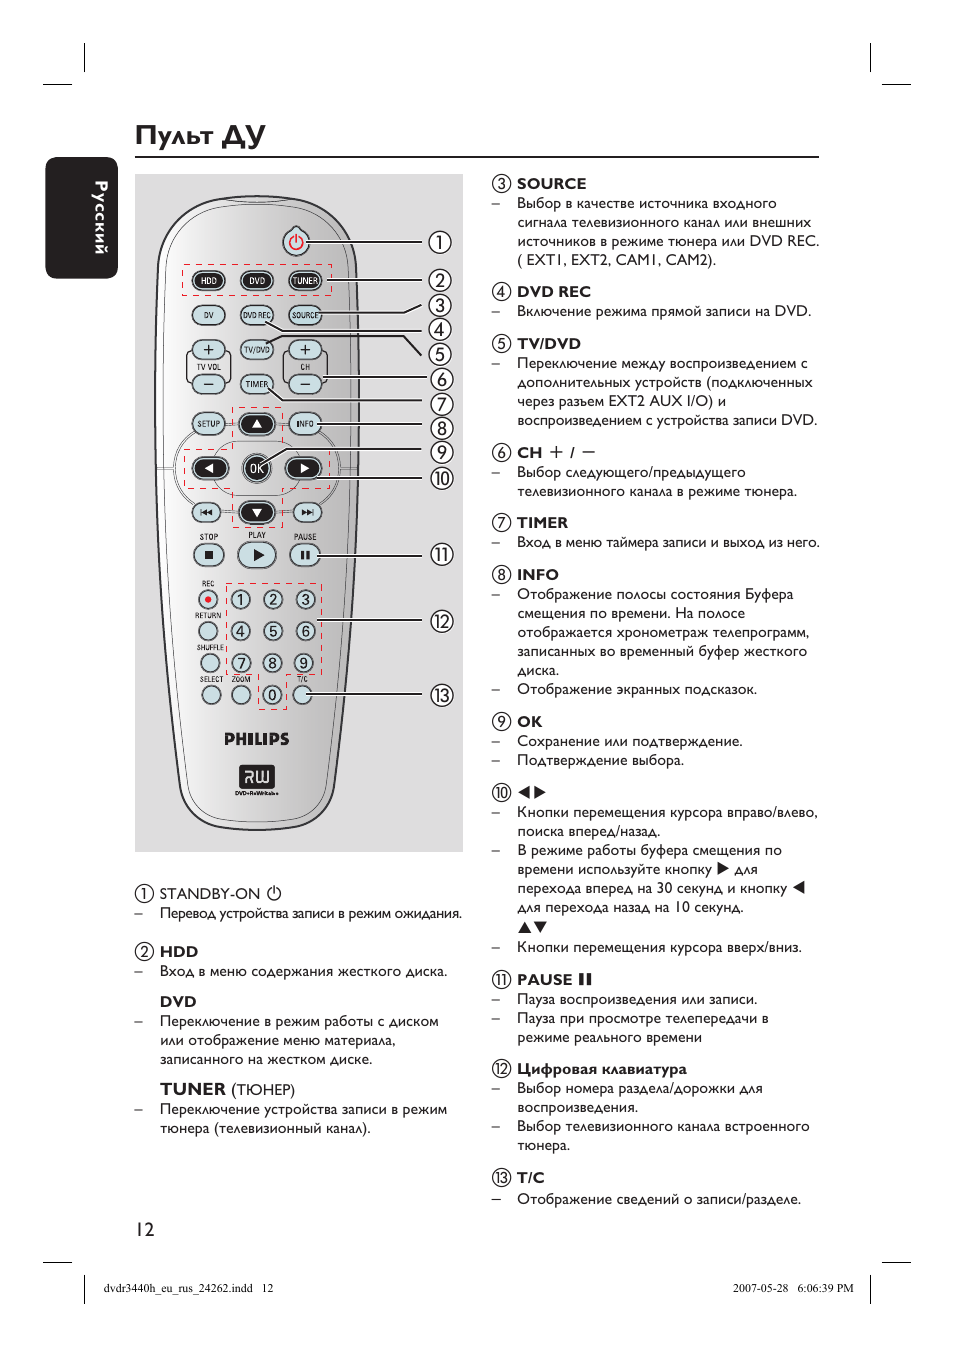 Код пульта телевизора филипс. Телевизоры Philips кинескопный пульт. Пульт для телевизора Филипс инструкция кнопок. Пульт Филипс для телевизора инструкция. Пульт от телевизора Филипс инструкция.